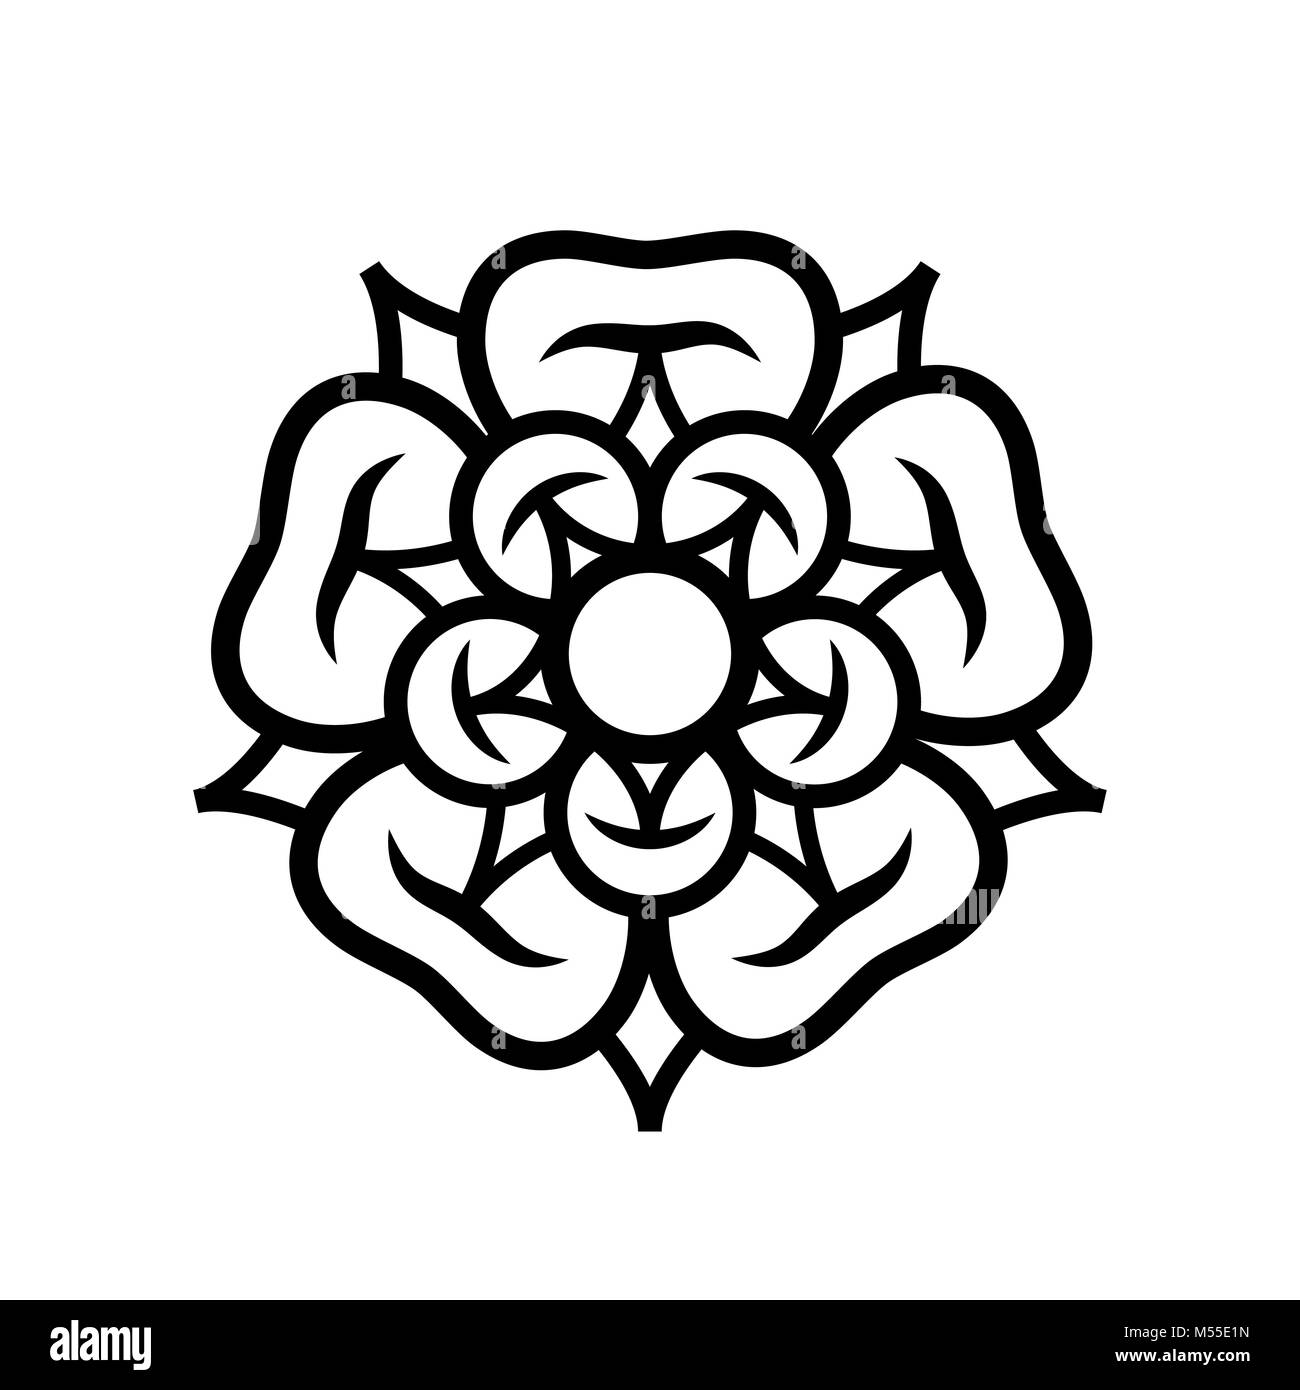 Rose (la regina dei fiori): emblema di amore, bellezza e perfezione. Foto Stock